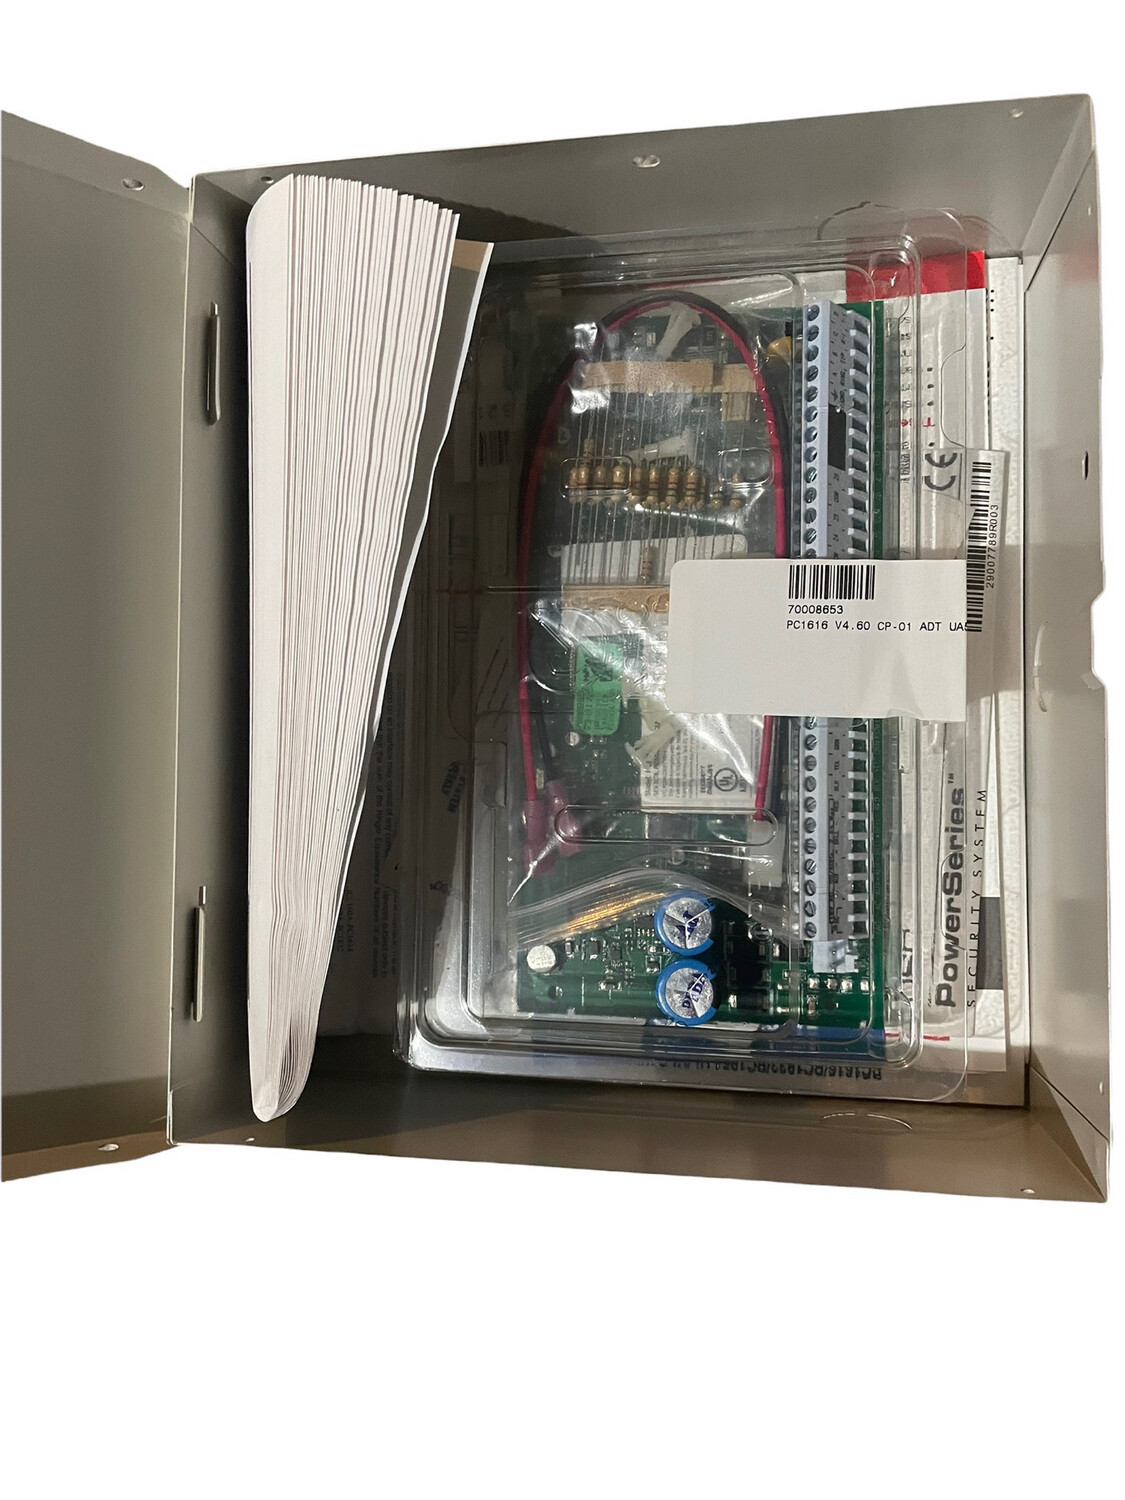 Dsc pc1616 hardwire panel kit ( open box) as is